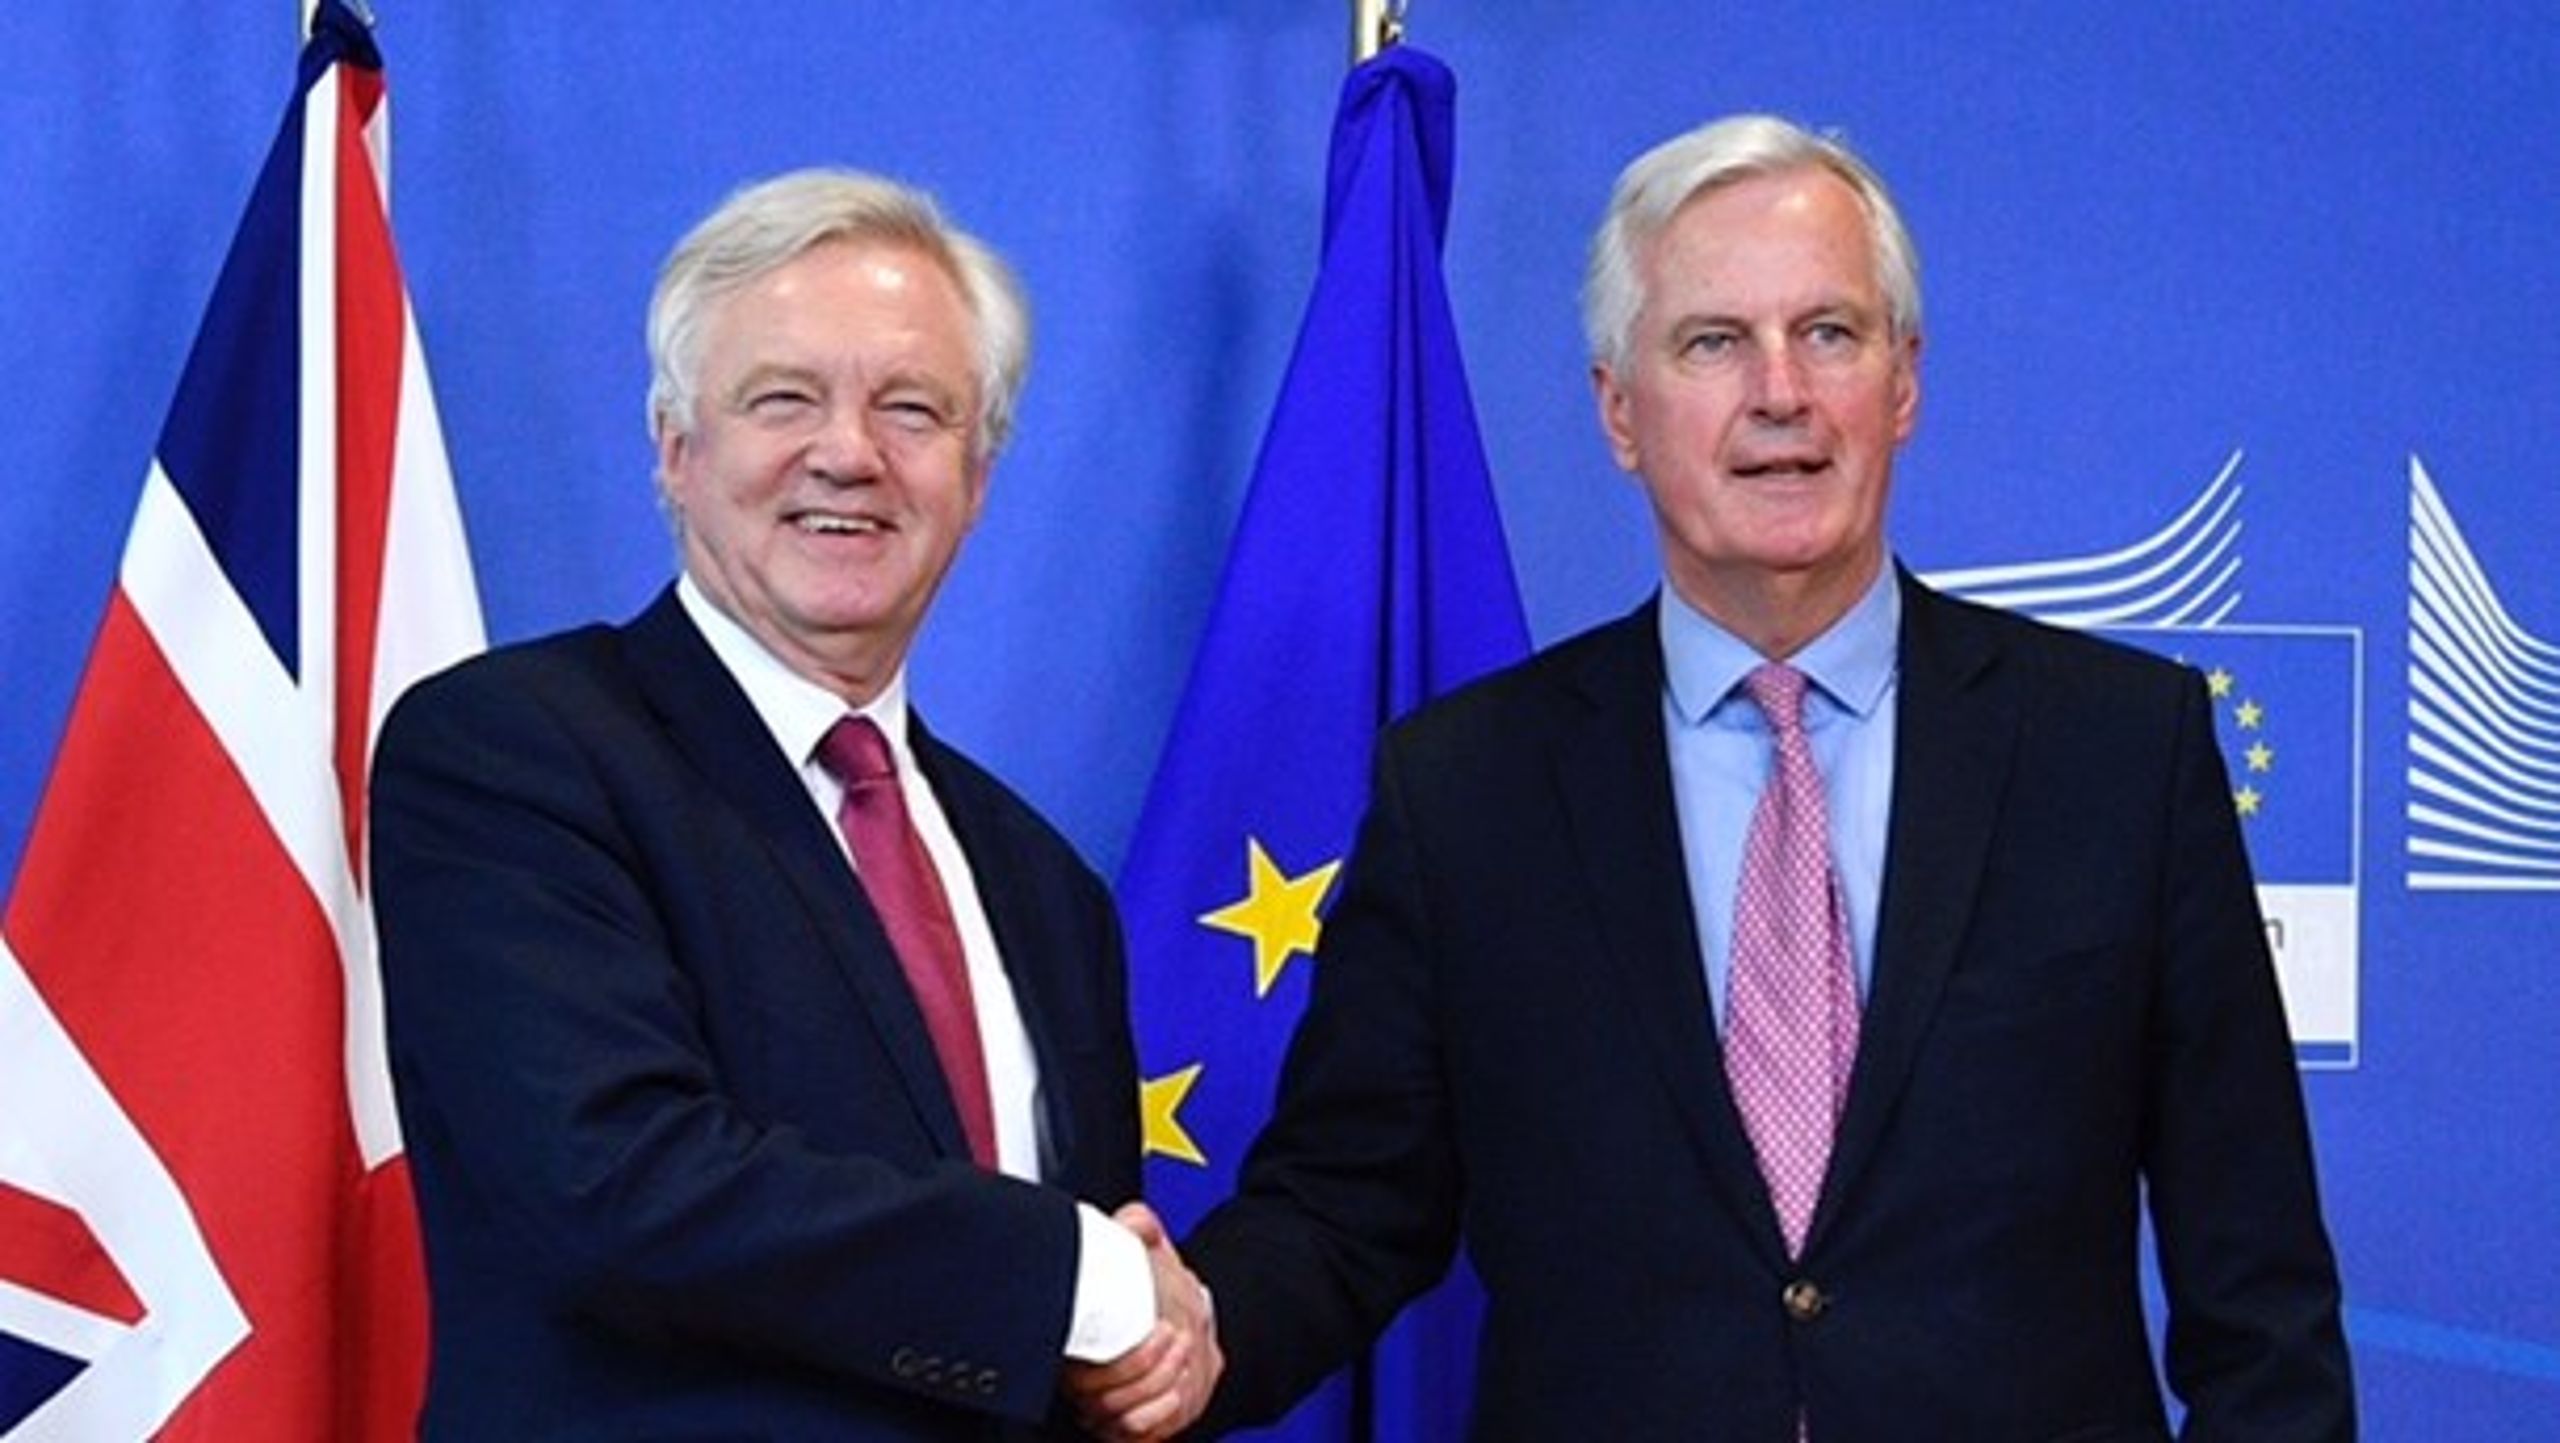 Efter næsten et år er forhandlingerne om briternes exit fra EU skudt i gang. I stolene sidder den britiske minister for Brexit, David Davis (t.v), og EU-chefforhandler Michel Barnier (t.h.).